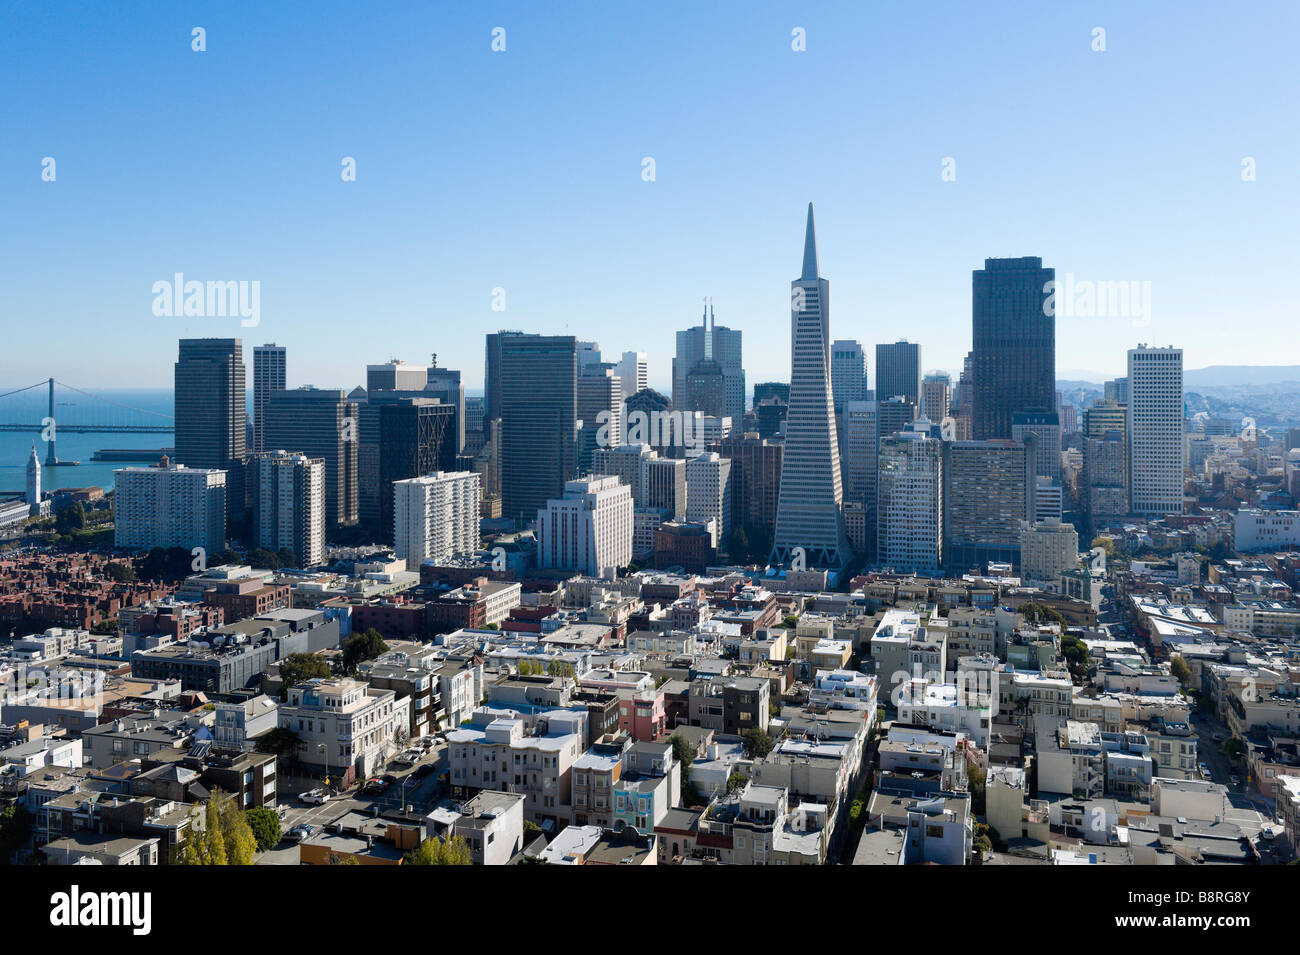 El distrito financiero del centro de la parte superior de la torre Coit onTelegraph Hill, San Francisco, California, EE.UU. Foto de stock